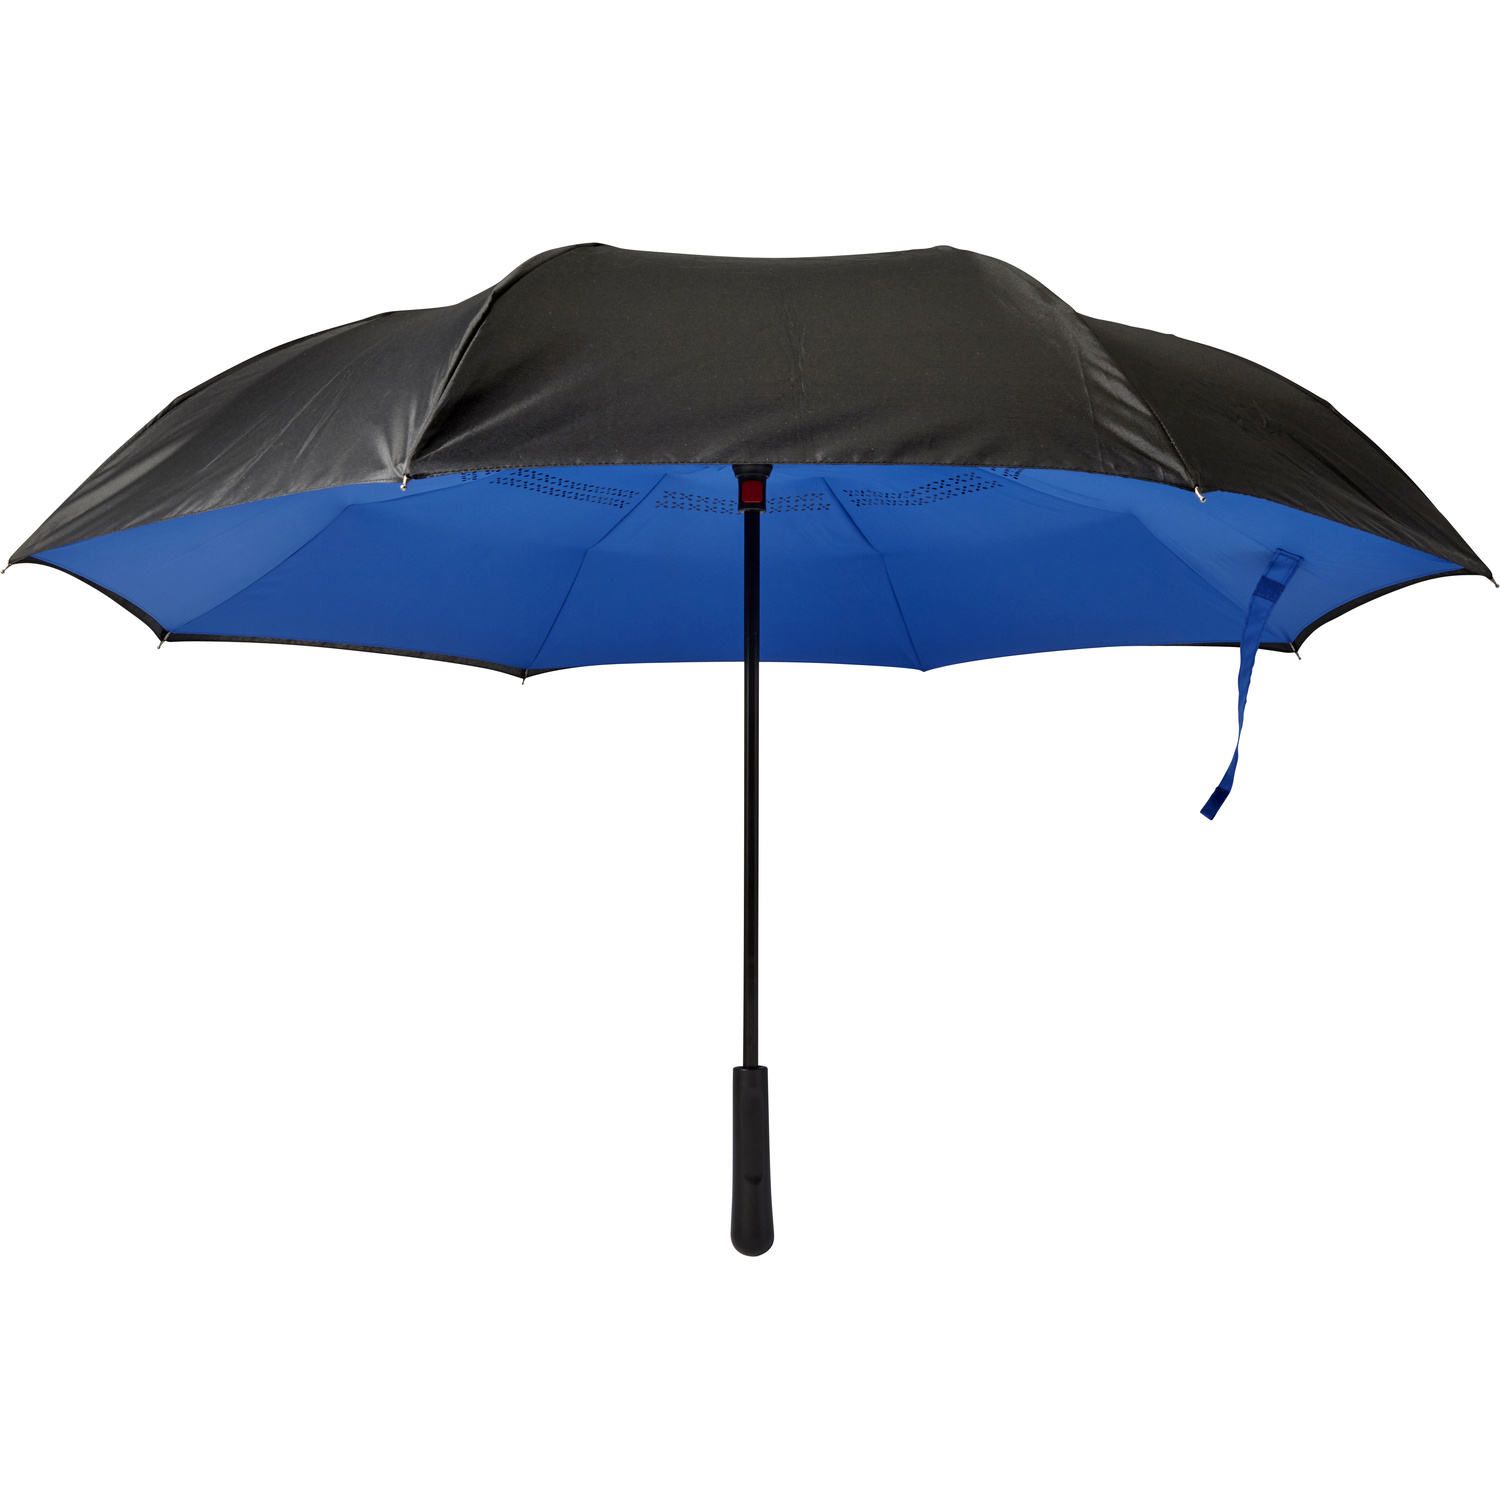 007963 005999999 2d000 frt pro01 fal - Twin-layer umbrella